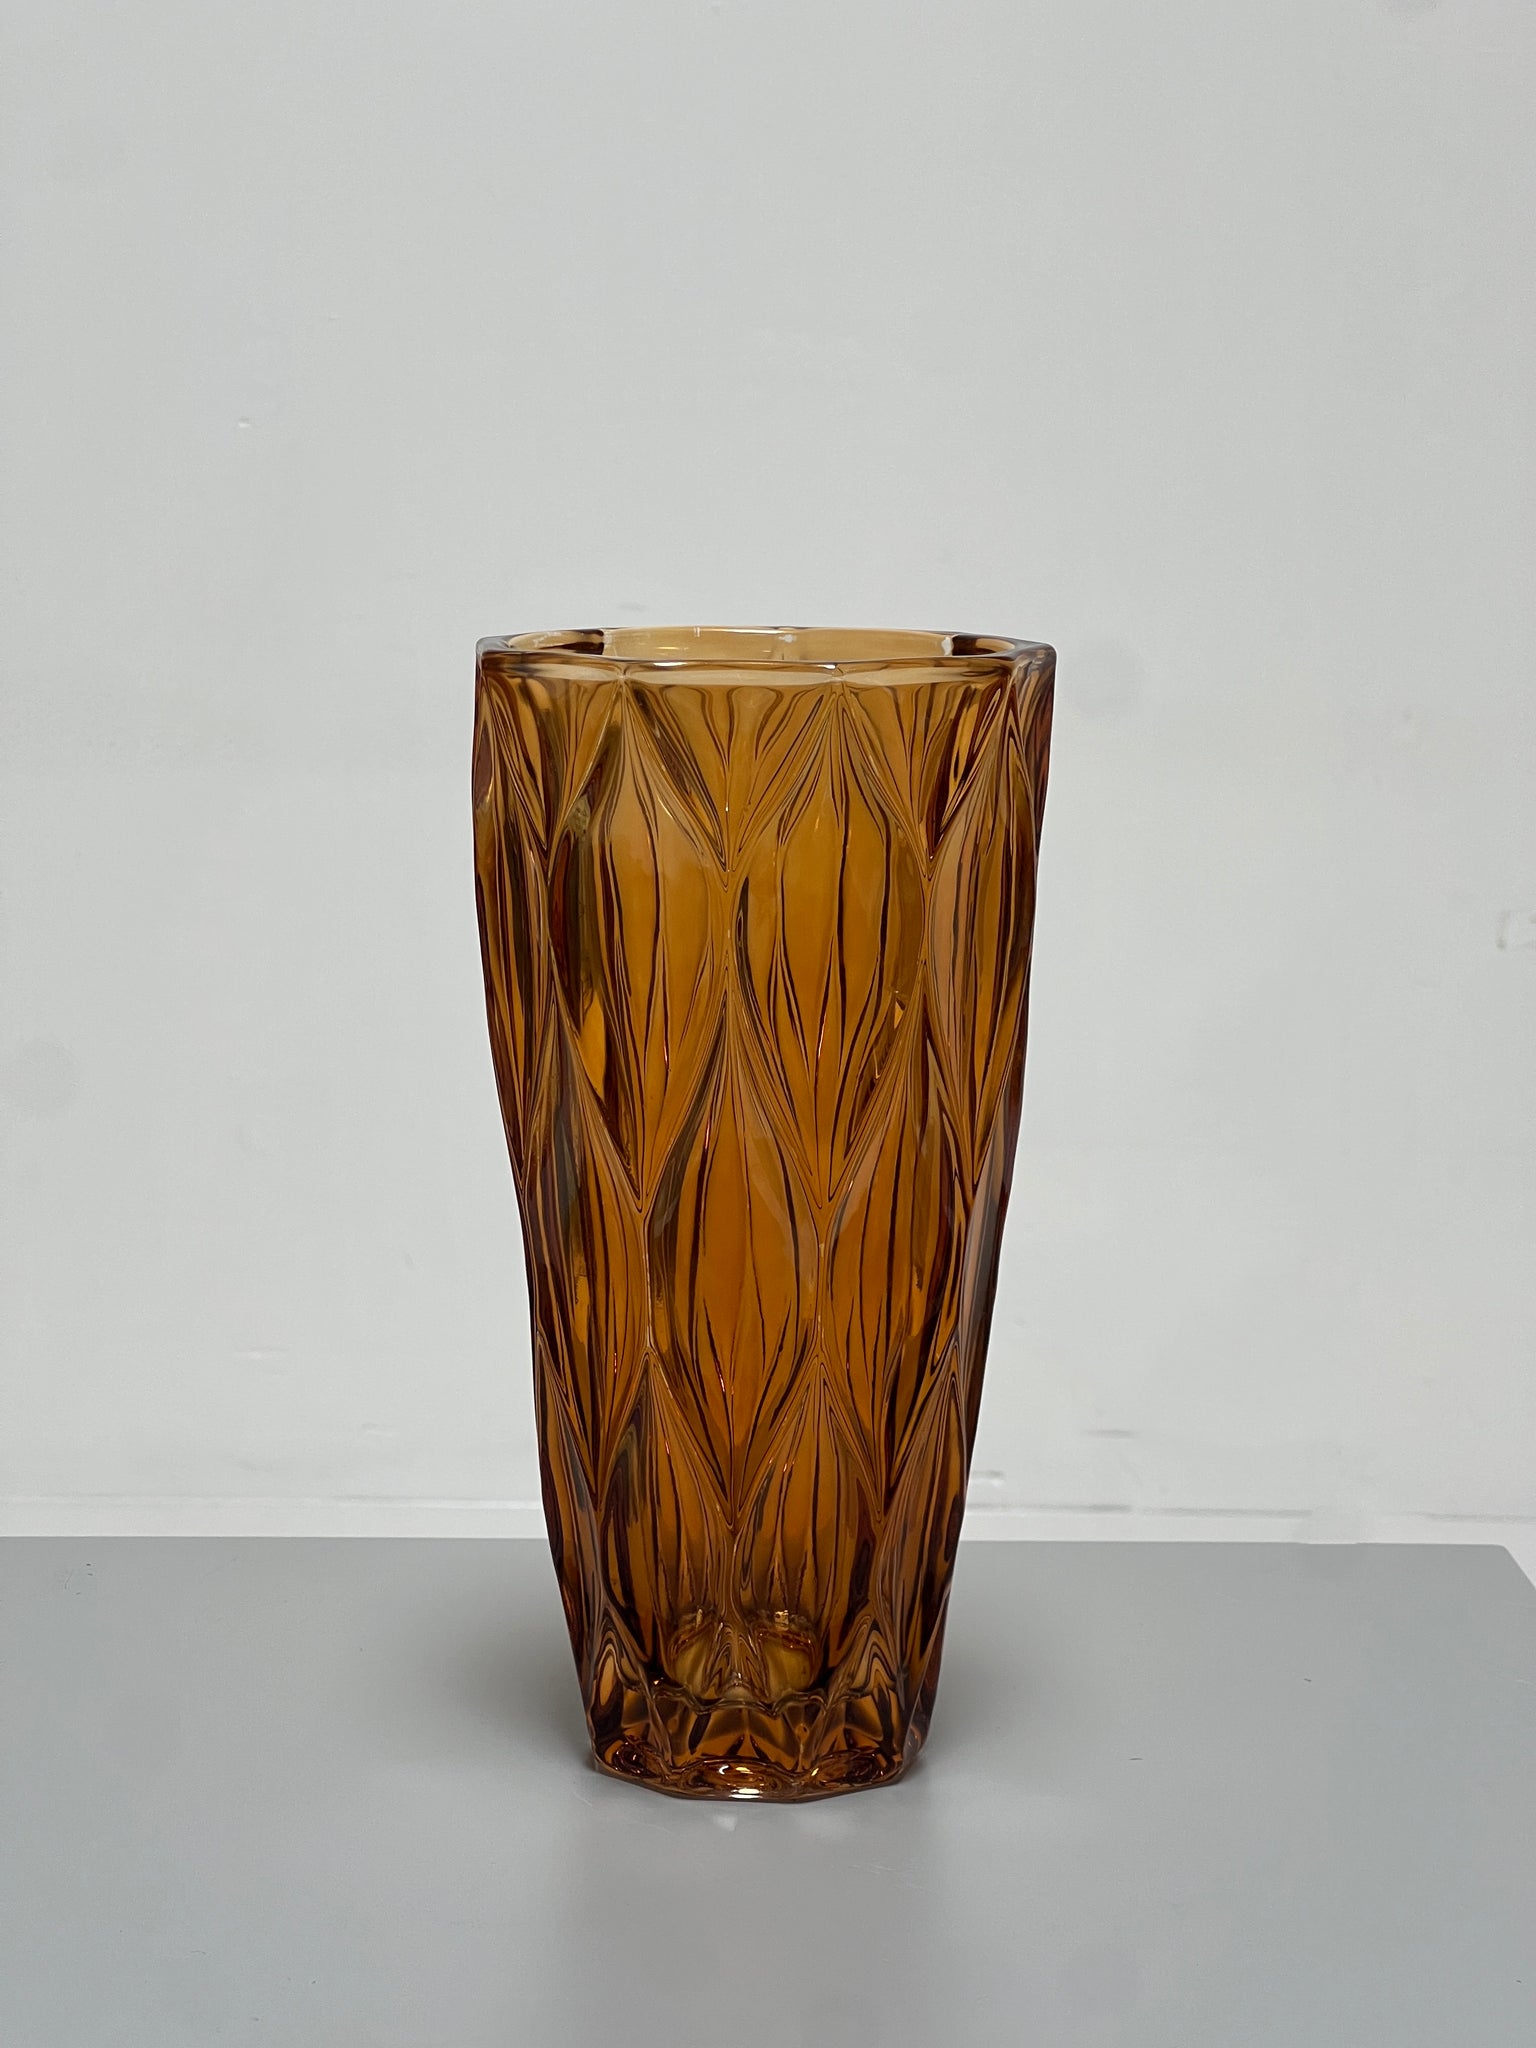 Vintage Amber Glass Vase